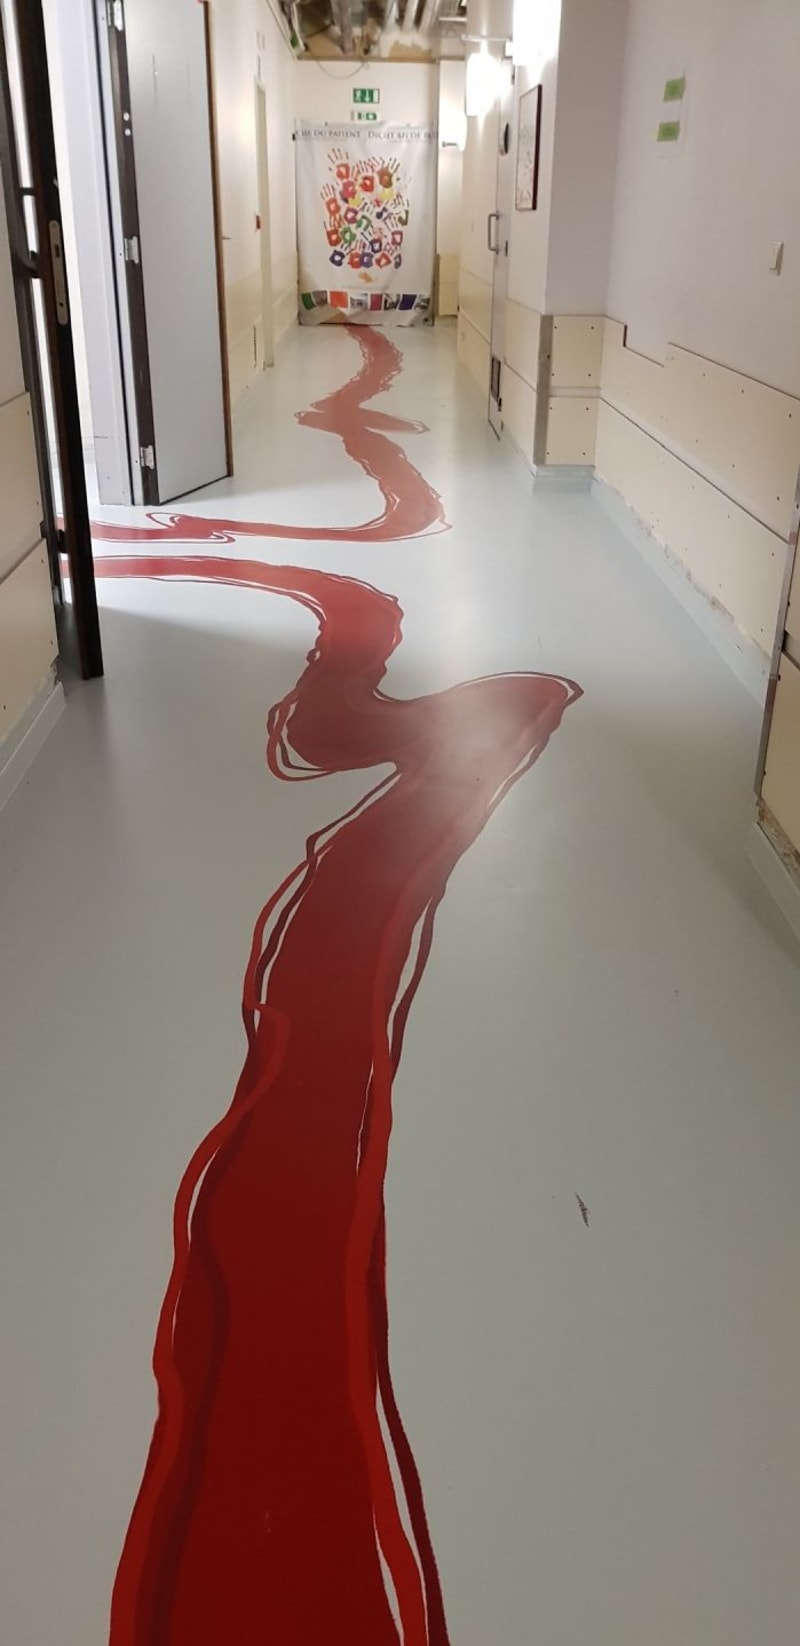 Tahle podlaha v nemocnici vyvolává nepříjemné asociace